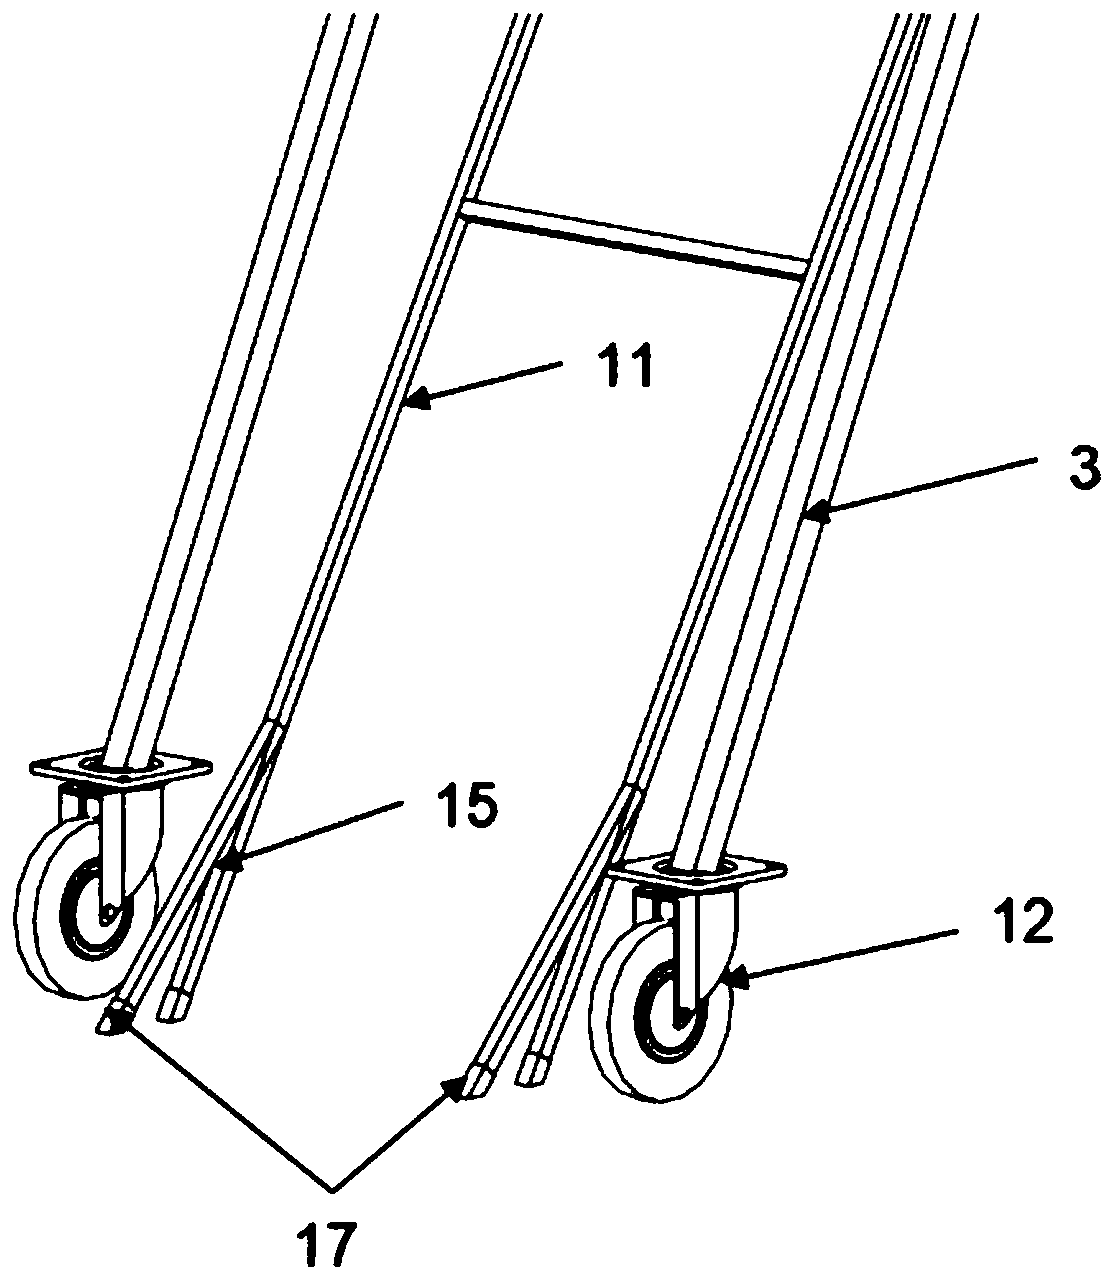 Self-movable herringbone ladder